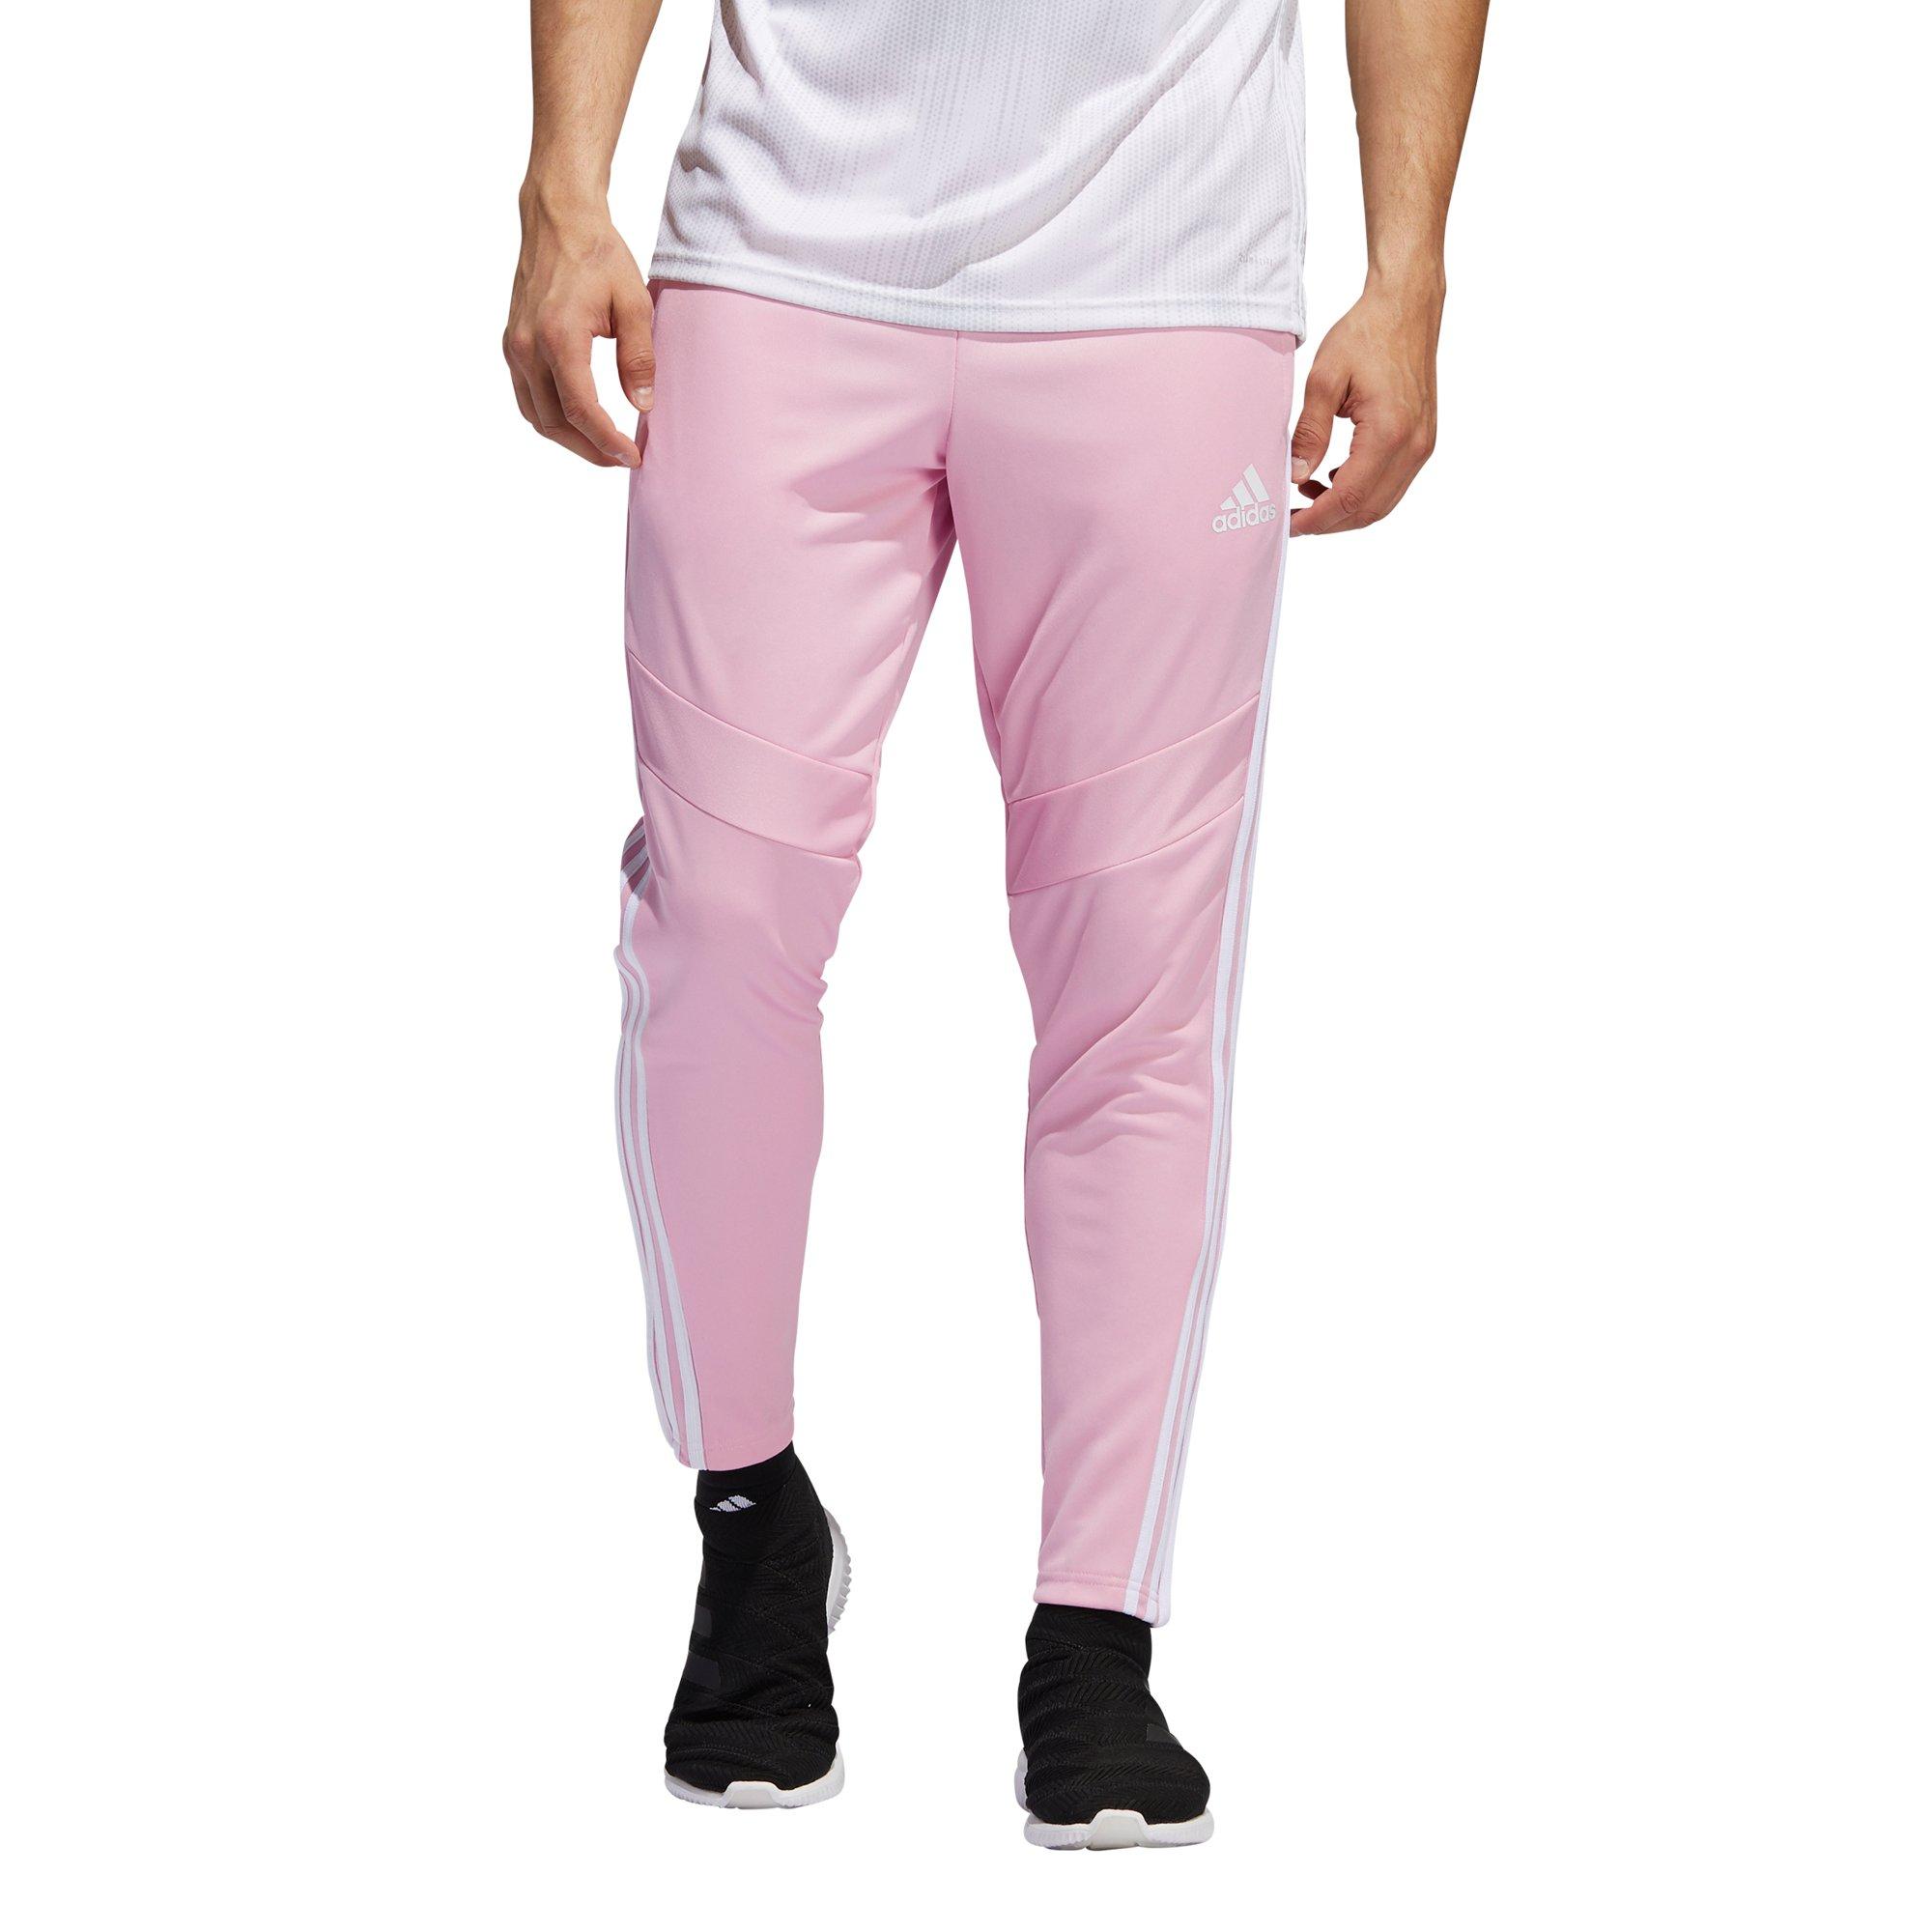 Tiro 19 Pink/White Training Pant 